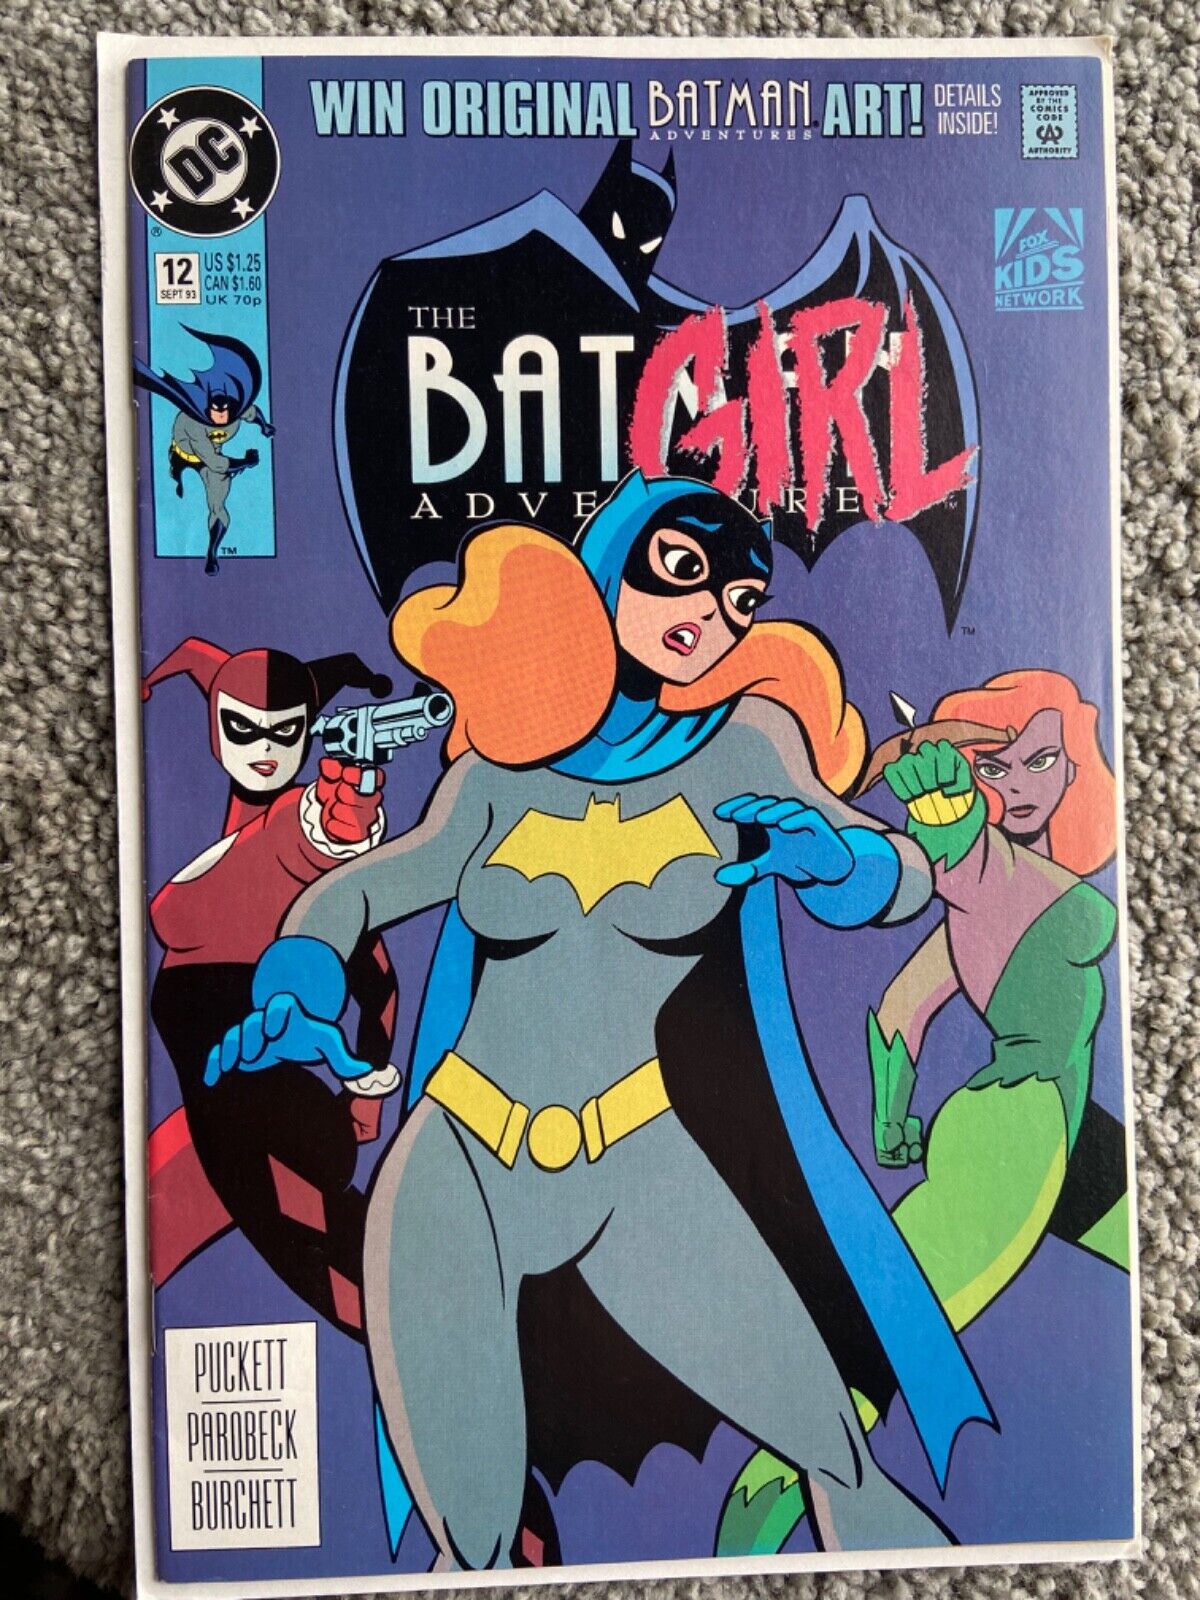 RARE 1993 BATMAN ADVENTURES #12 KEY ISSUE 1ST HARLEY QUINN PLUS #1-18